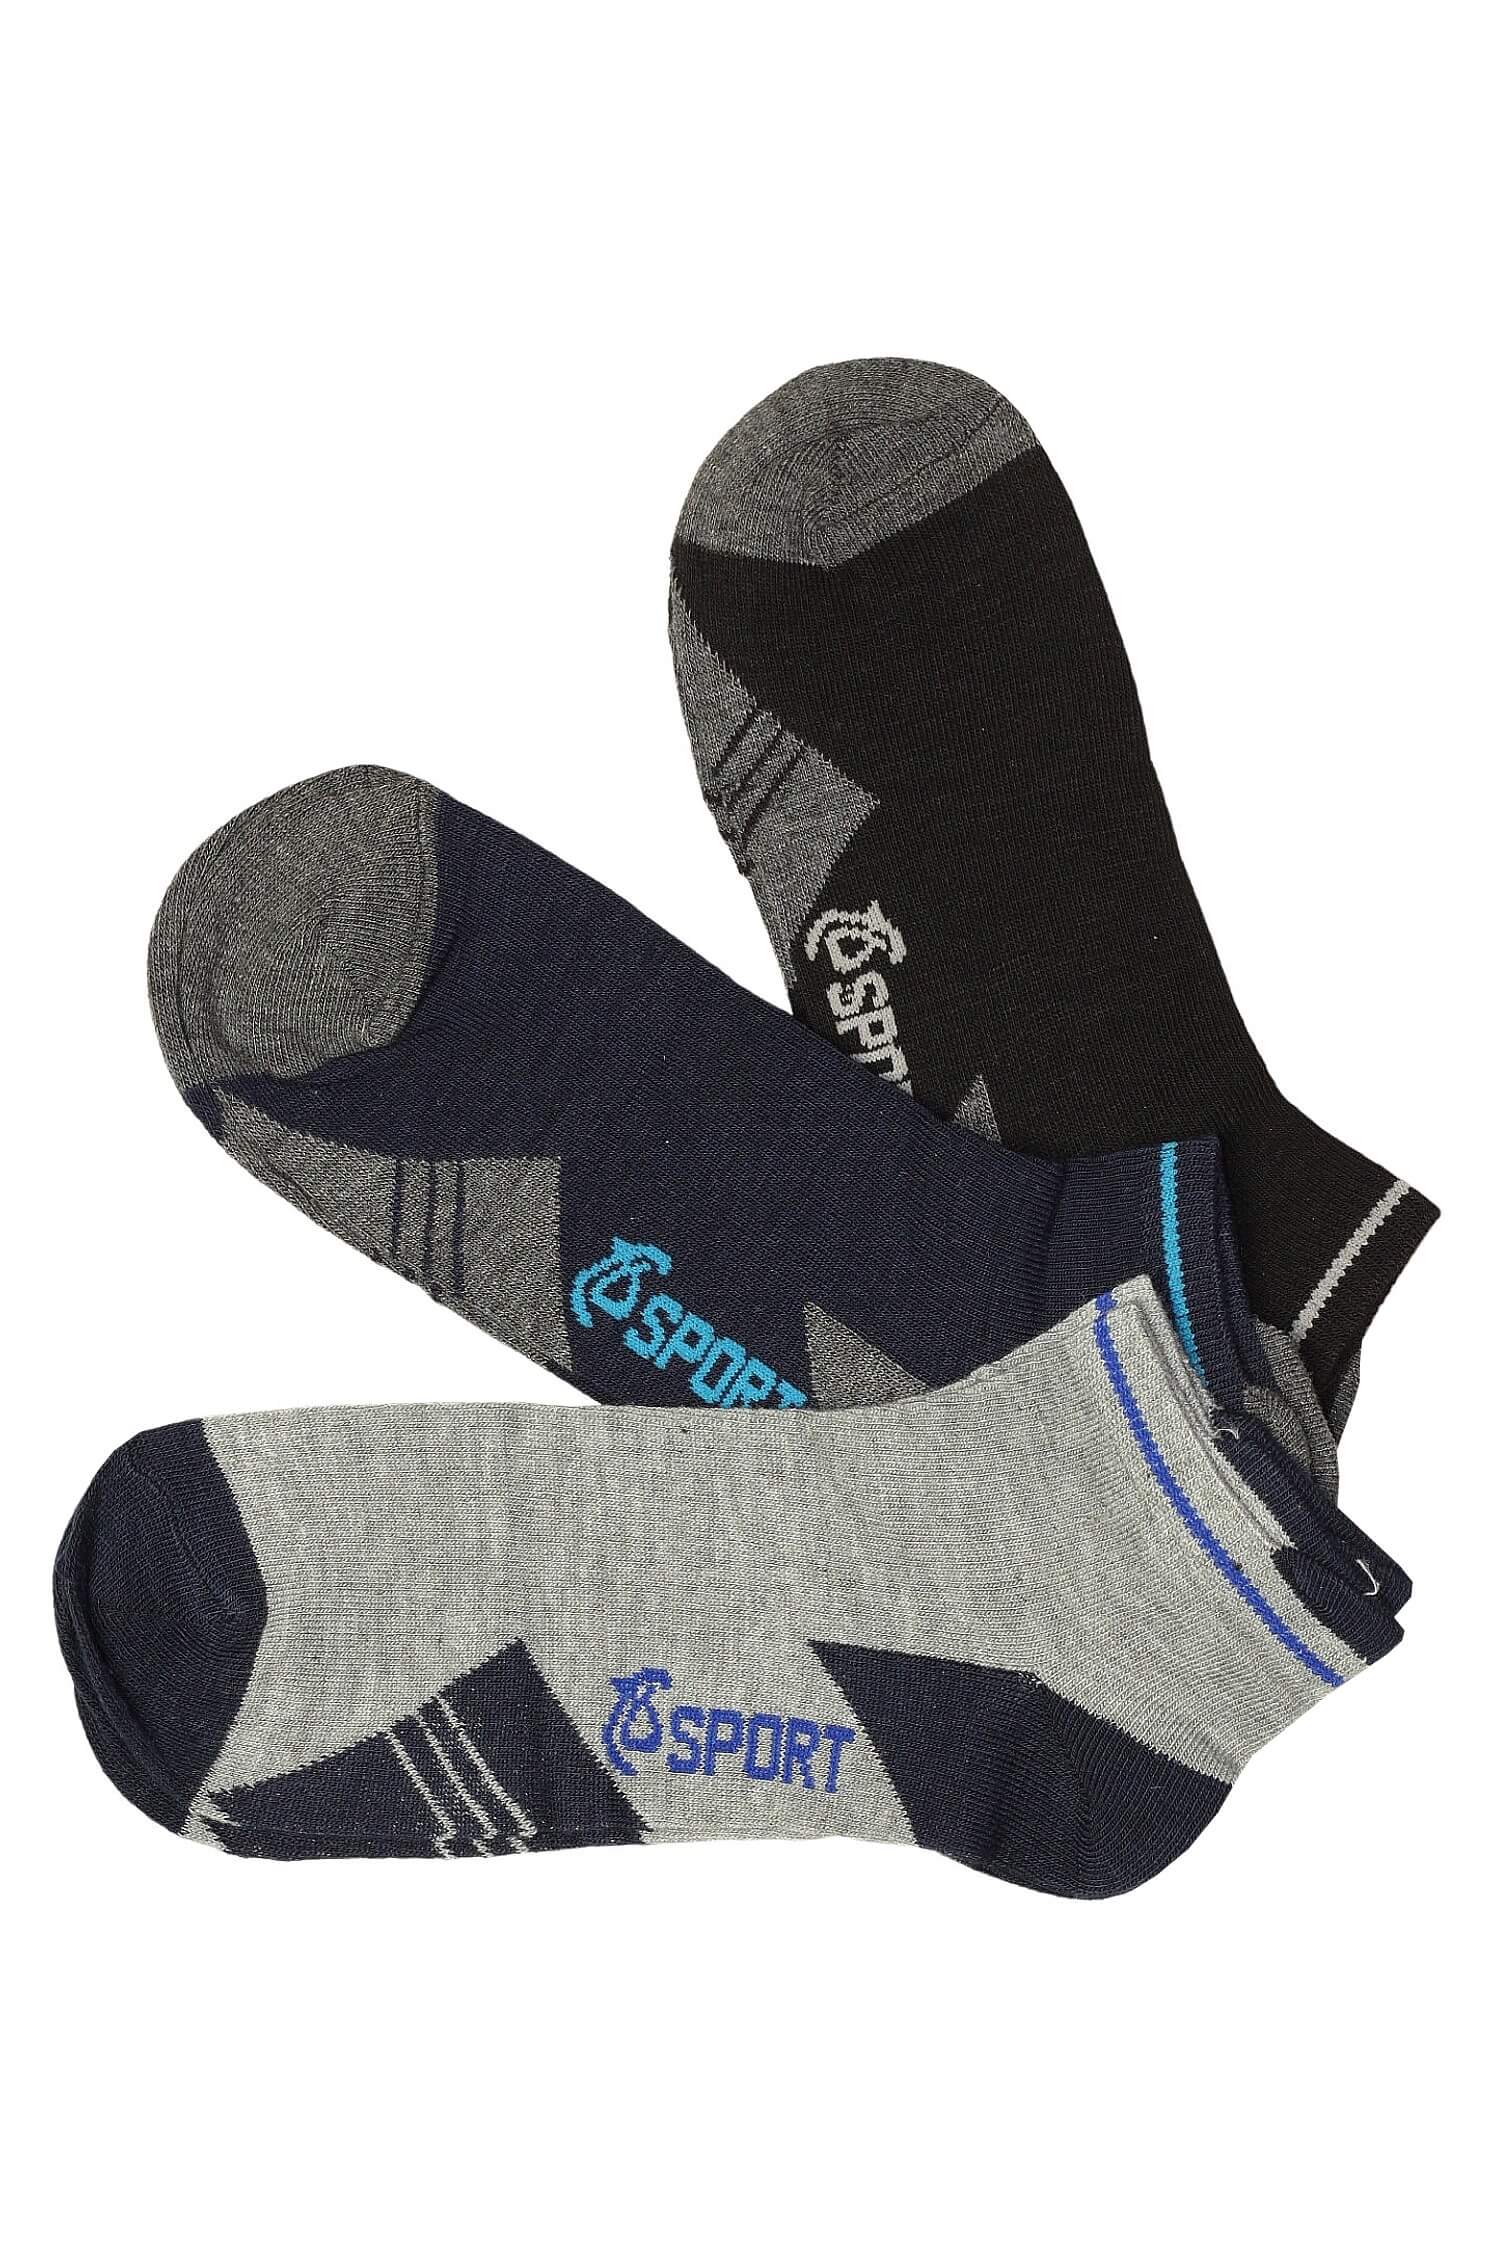 Nízké ponožky pro muže bavlněné PM5012 3 páry 40-43 vícebarevná